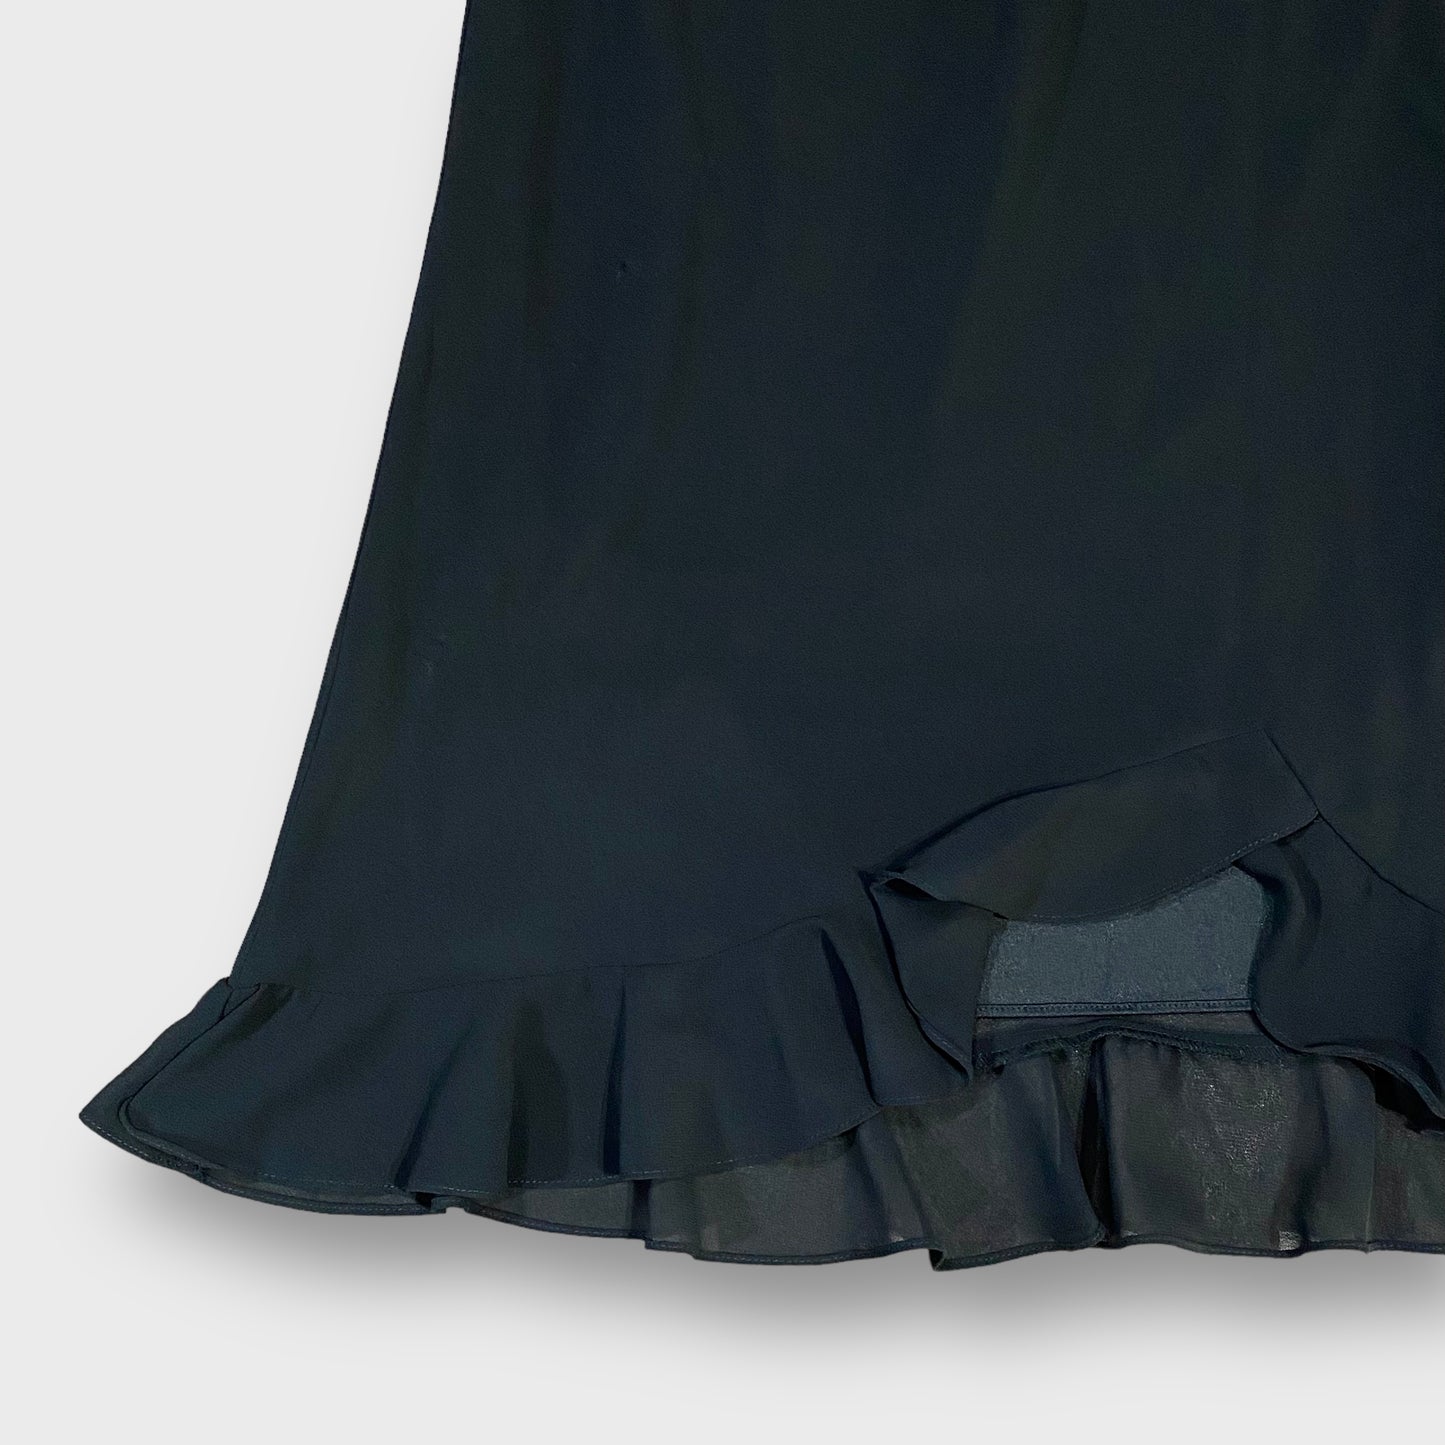 "J.B.S" Frill design skirt